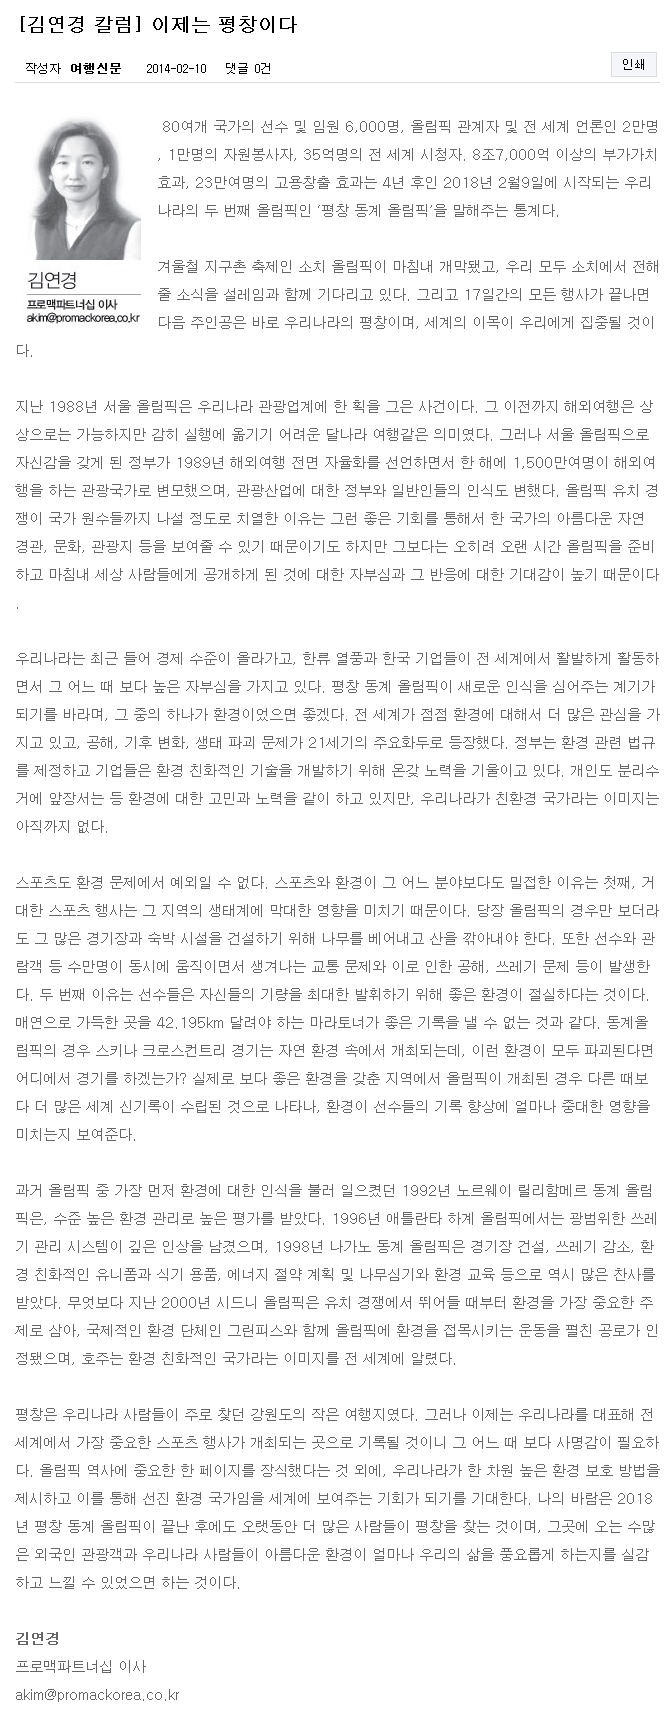 김연경 칼럼  이제는 평창이다   News   여행신문.jpeg